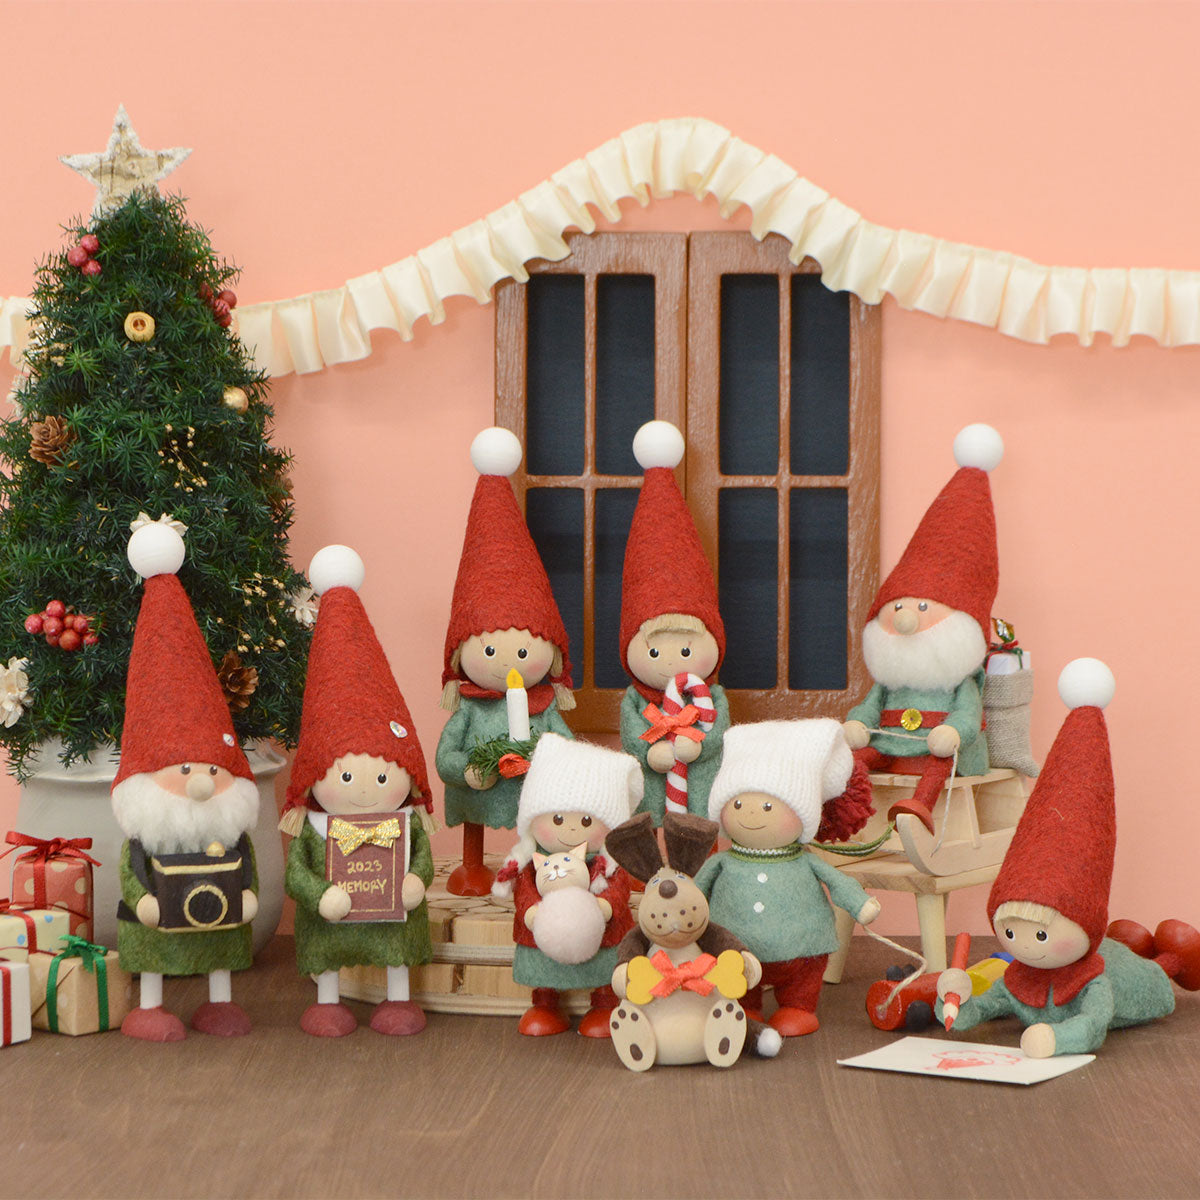 【予約】【2023新作】NORDIKA nisse ノルディカ ニッセ クリスマス 木製人形 ( ネコのぬいぐるみを抱えた女の子 / Joy to the world )